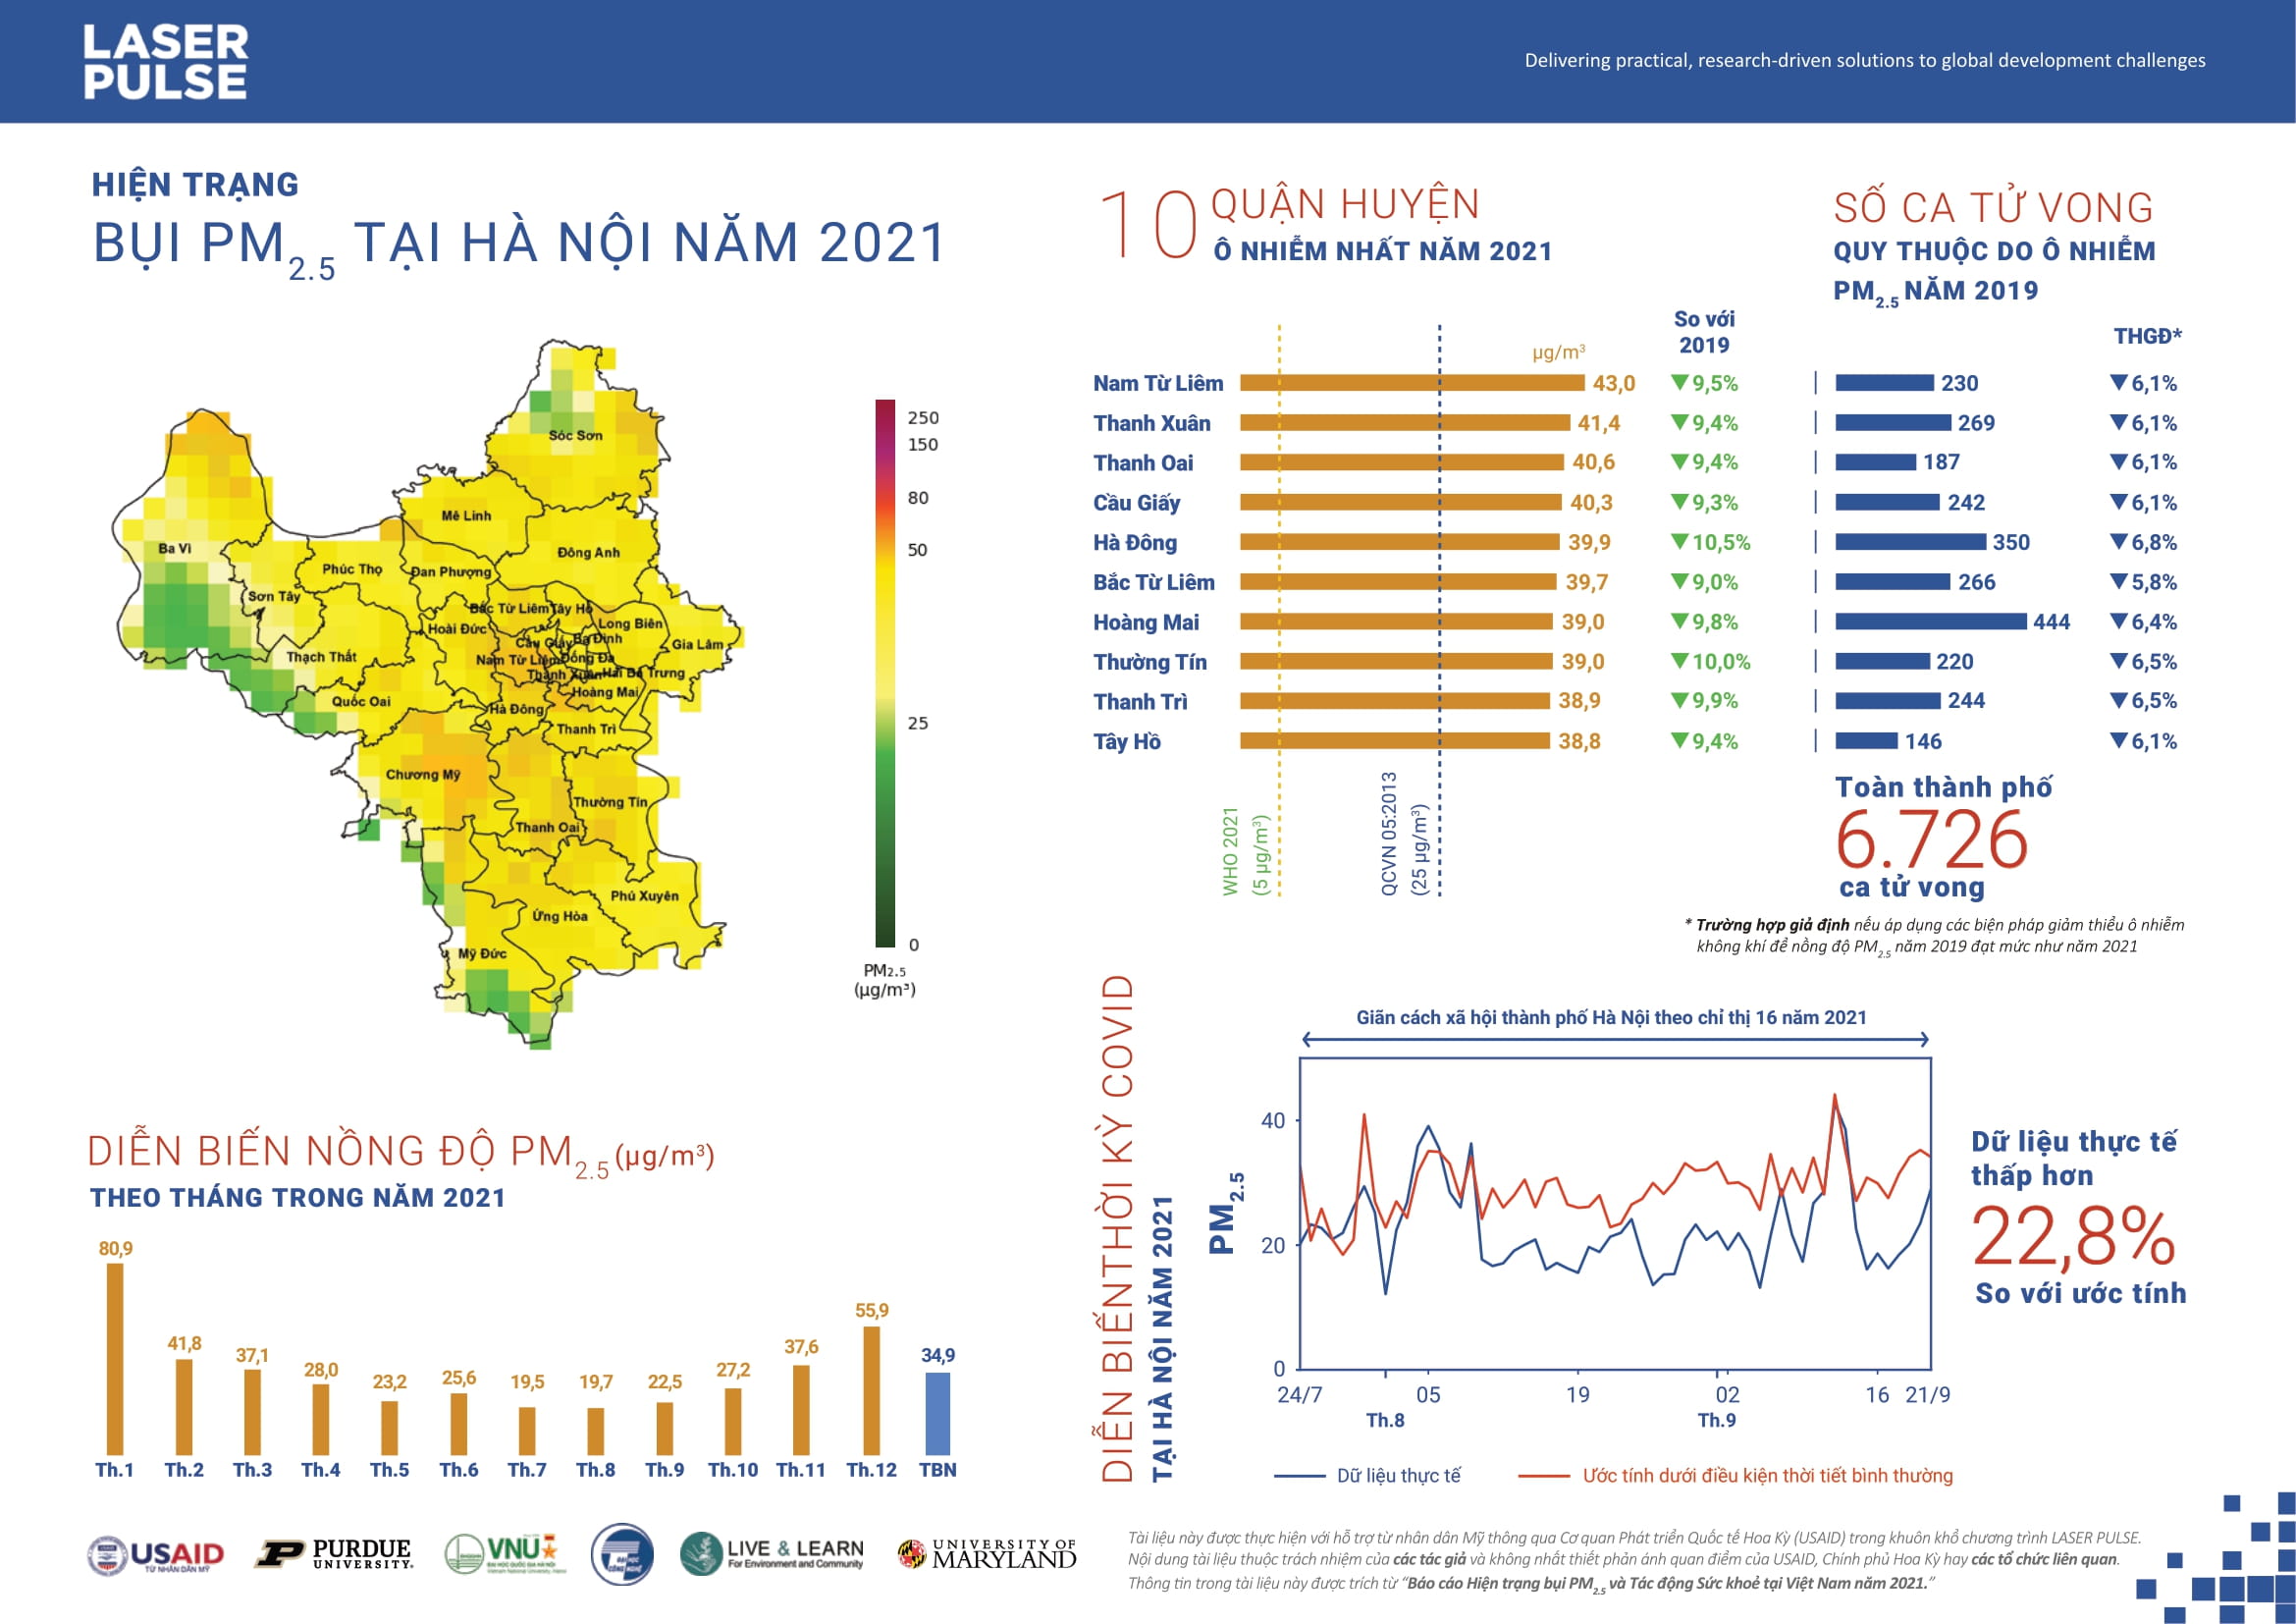 Hiện trạng bụi PM2.5 ở Hà Nội năm 2021